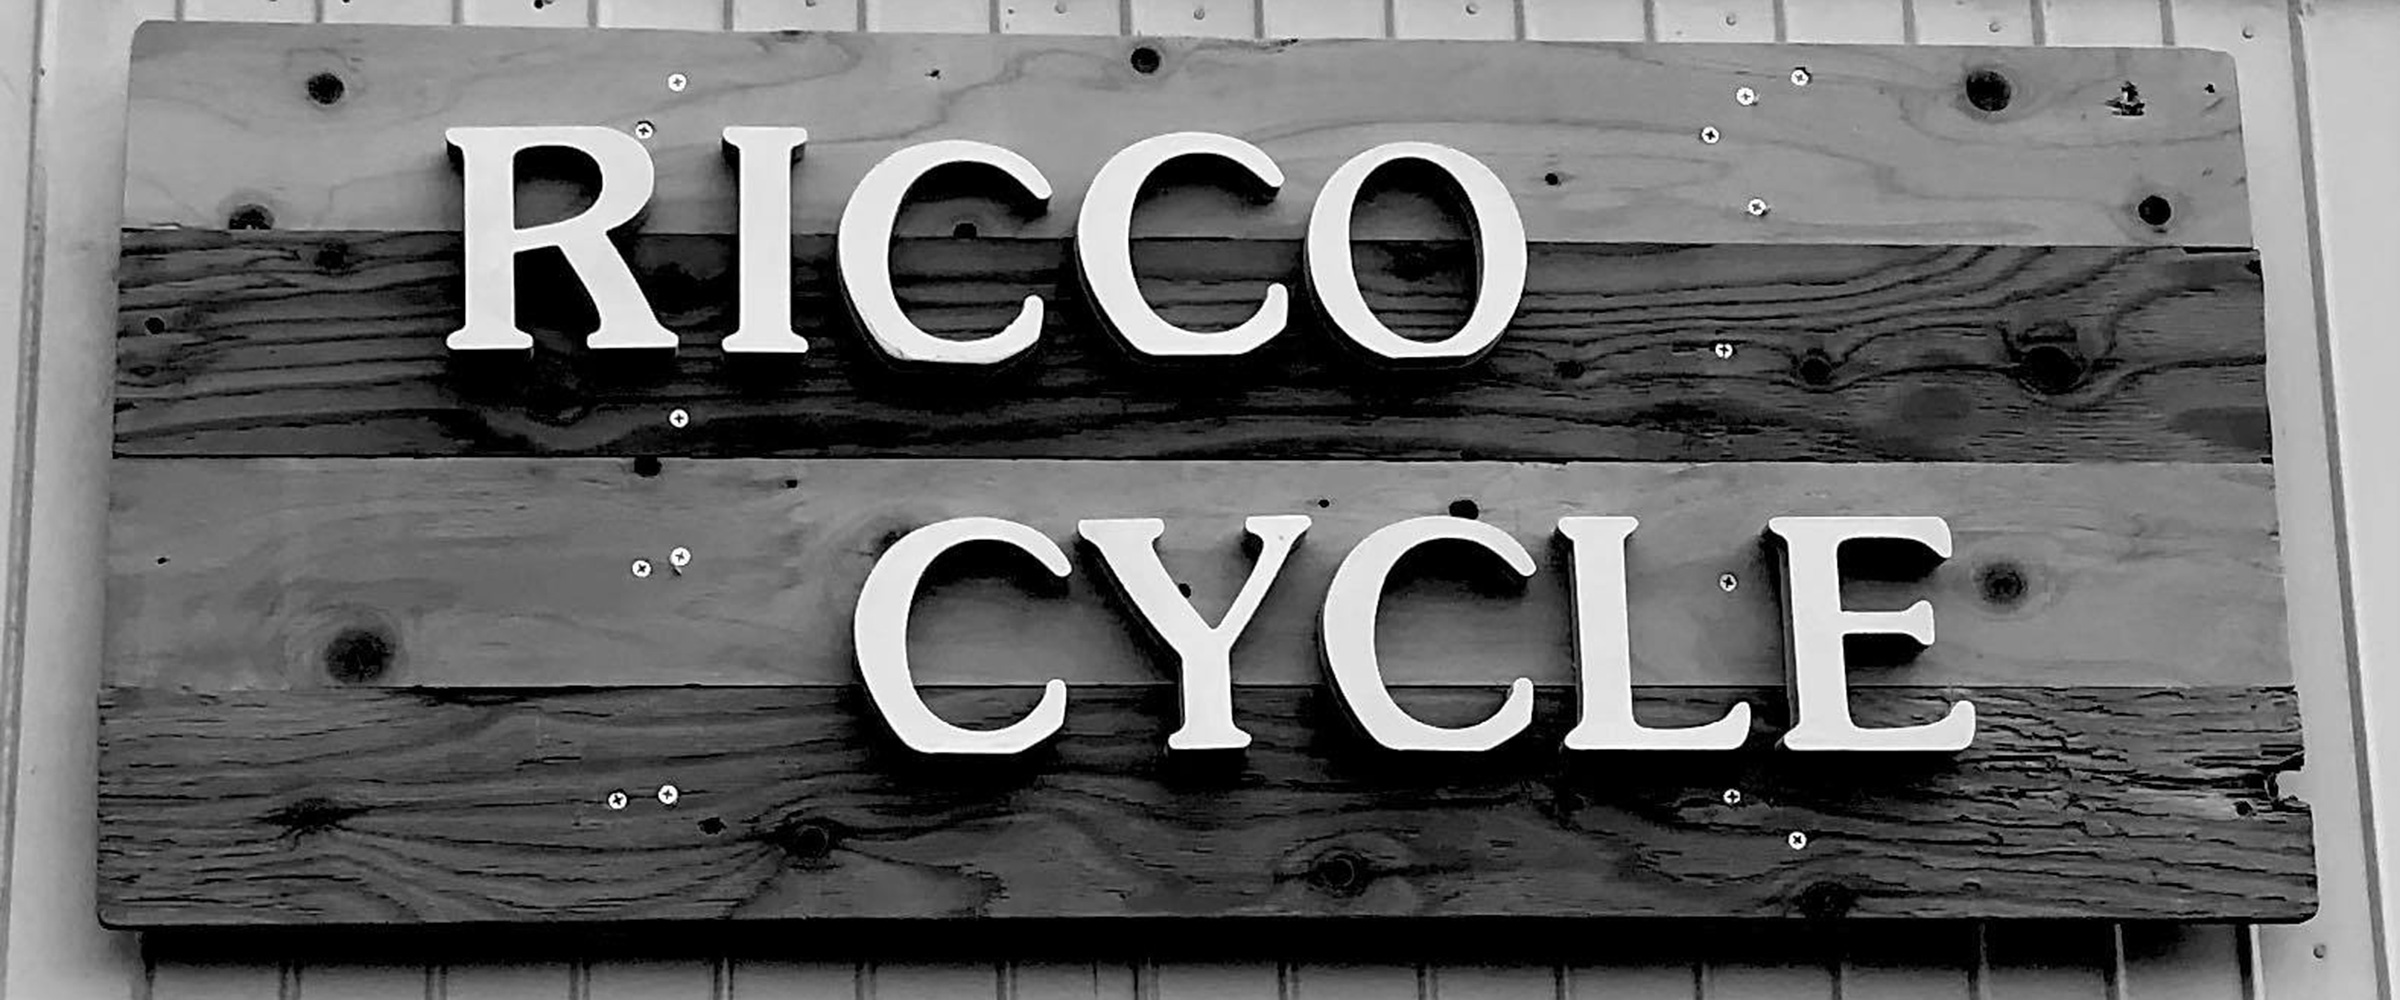 RICCO CYCLE